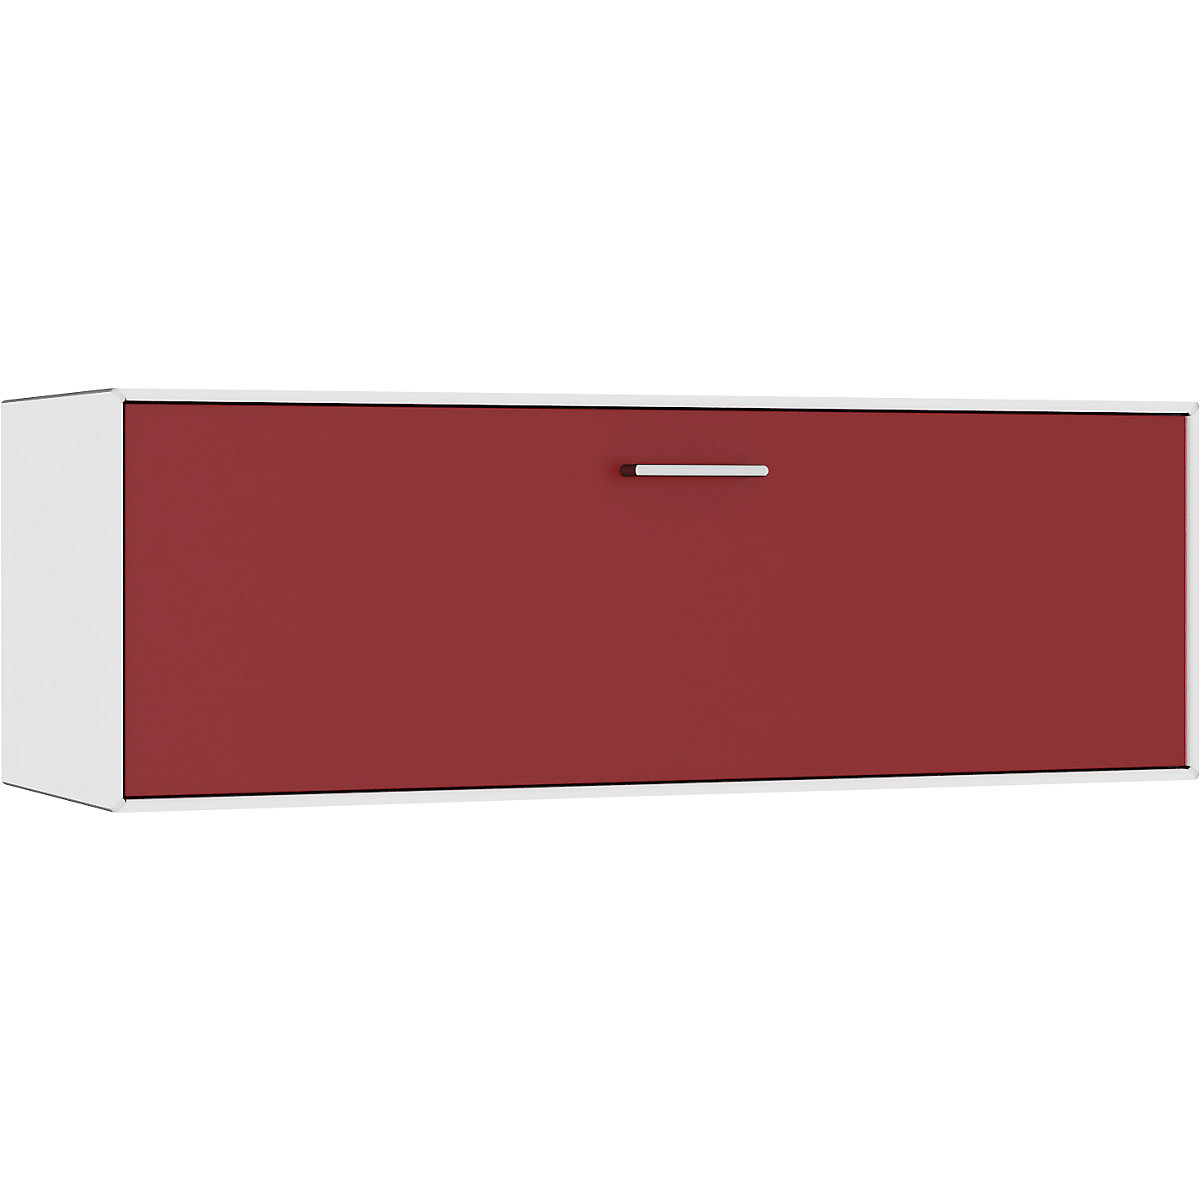 mauser – Cuie individuală, suspendată, 1 sertar, lățime 1155 mm, alb pur / roșu rubin